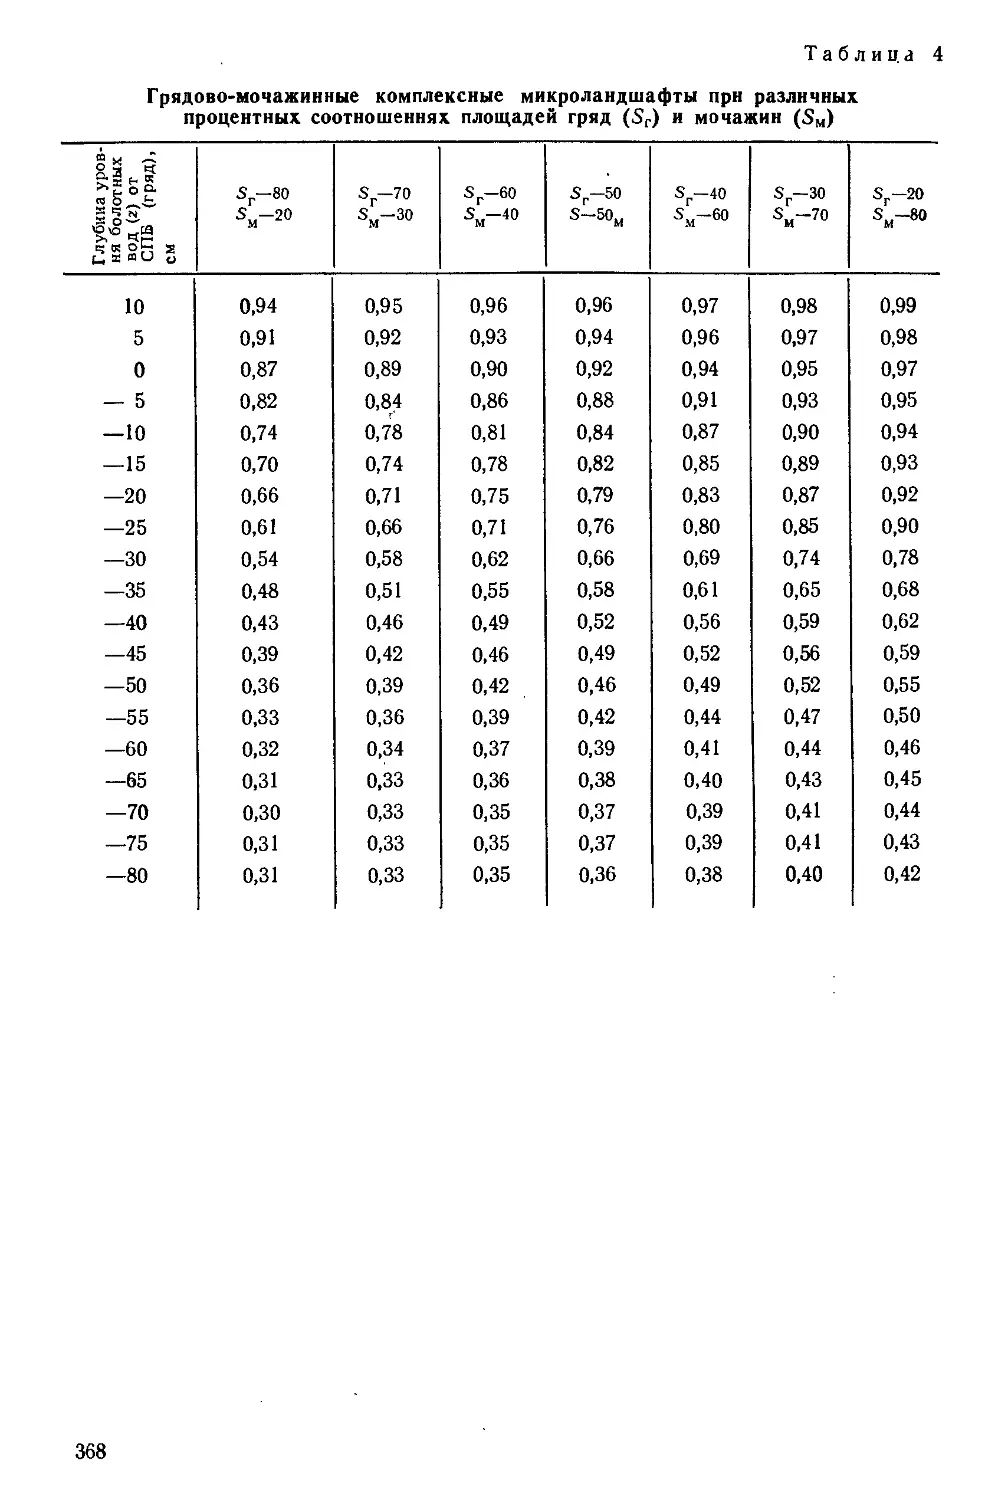 {368} Таблица 4. Грядово-мочажинные комплексные микроландшафты при различных процентных соотношениях площадей гряд и мочажин